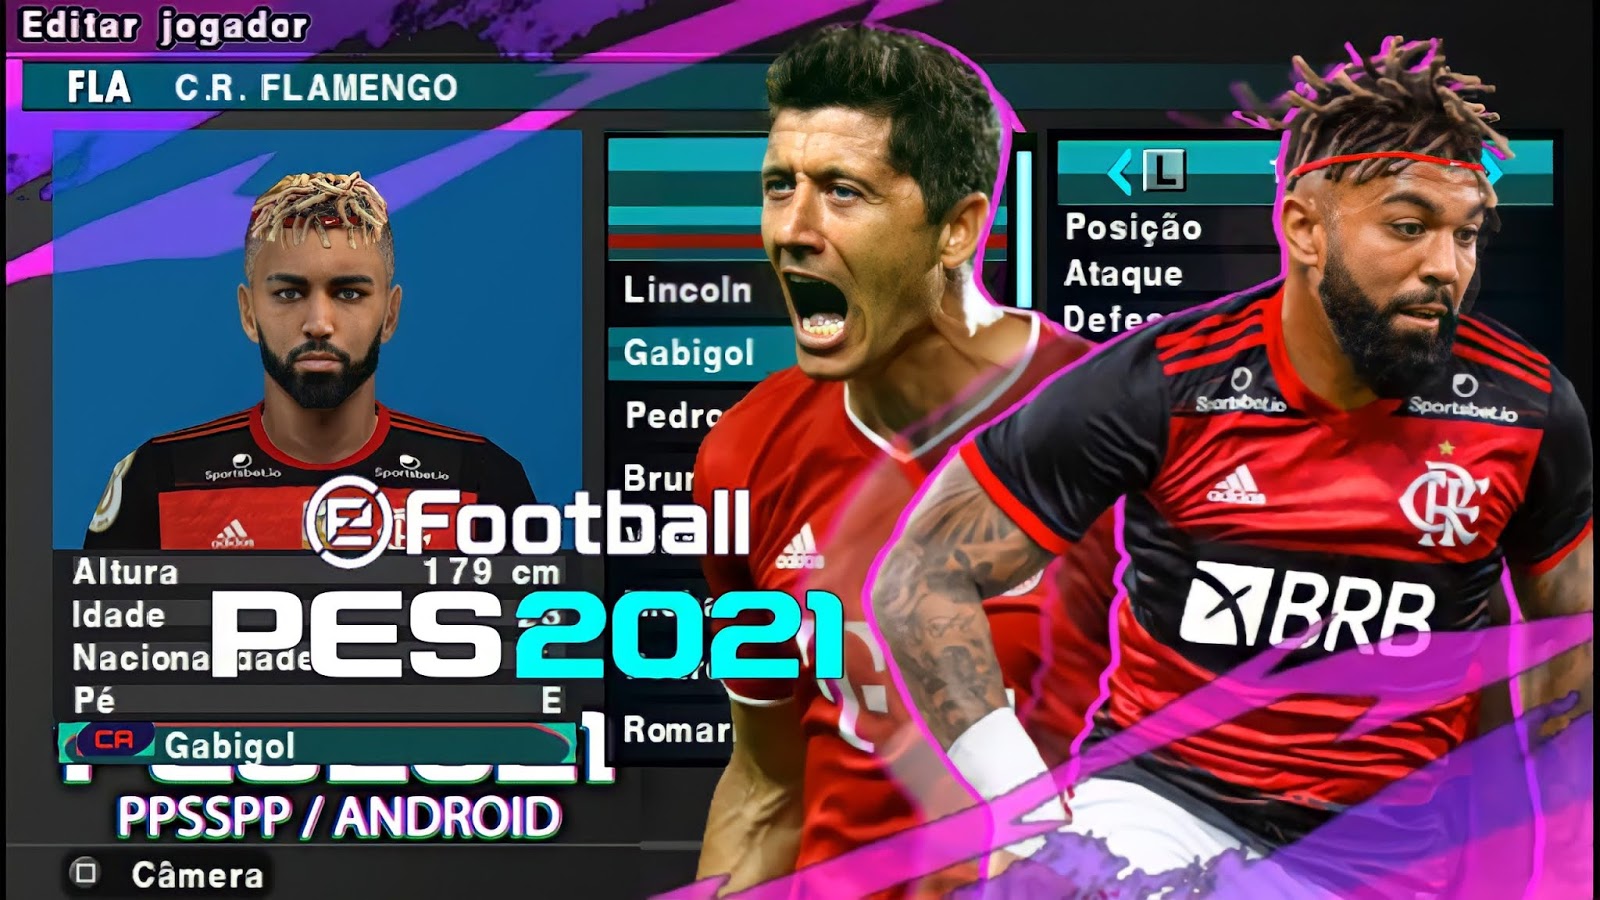 PES 2020 Brasileirão + Europeu atualizado, Narração BR Jogo de futebol  PPSSPP, PSP, PC, ANDROID